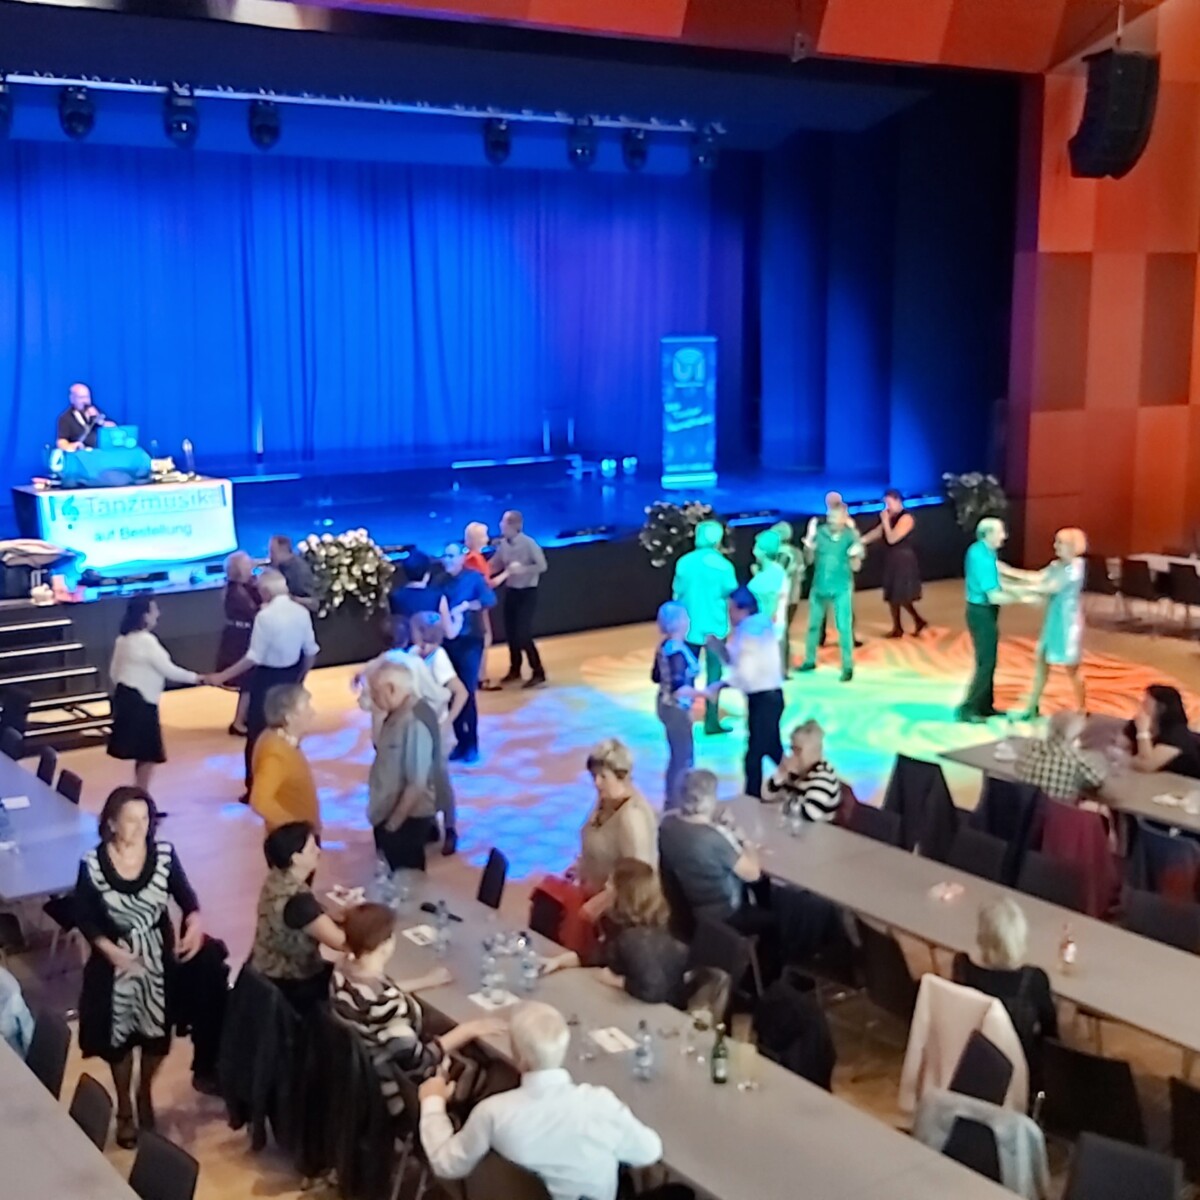 SZentrum in Schwaz Saal mit tanzenden Gästen